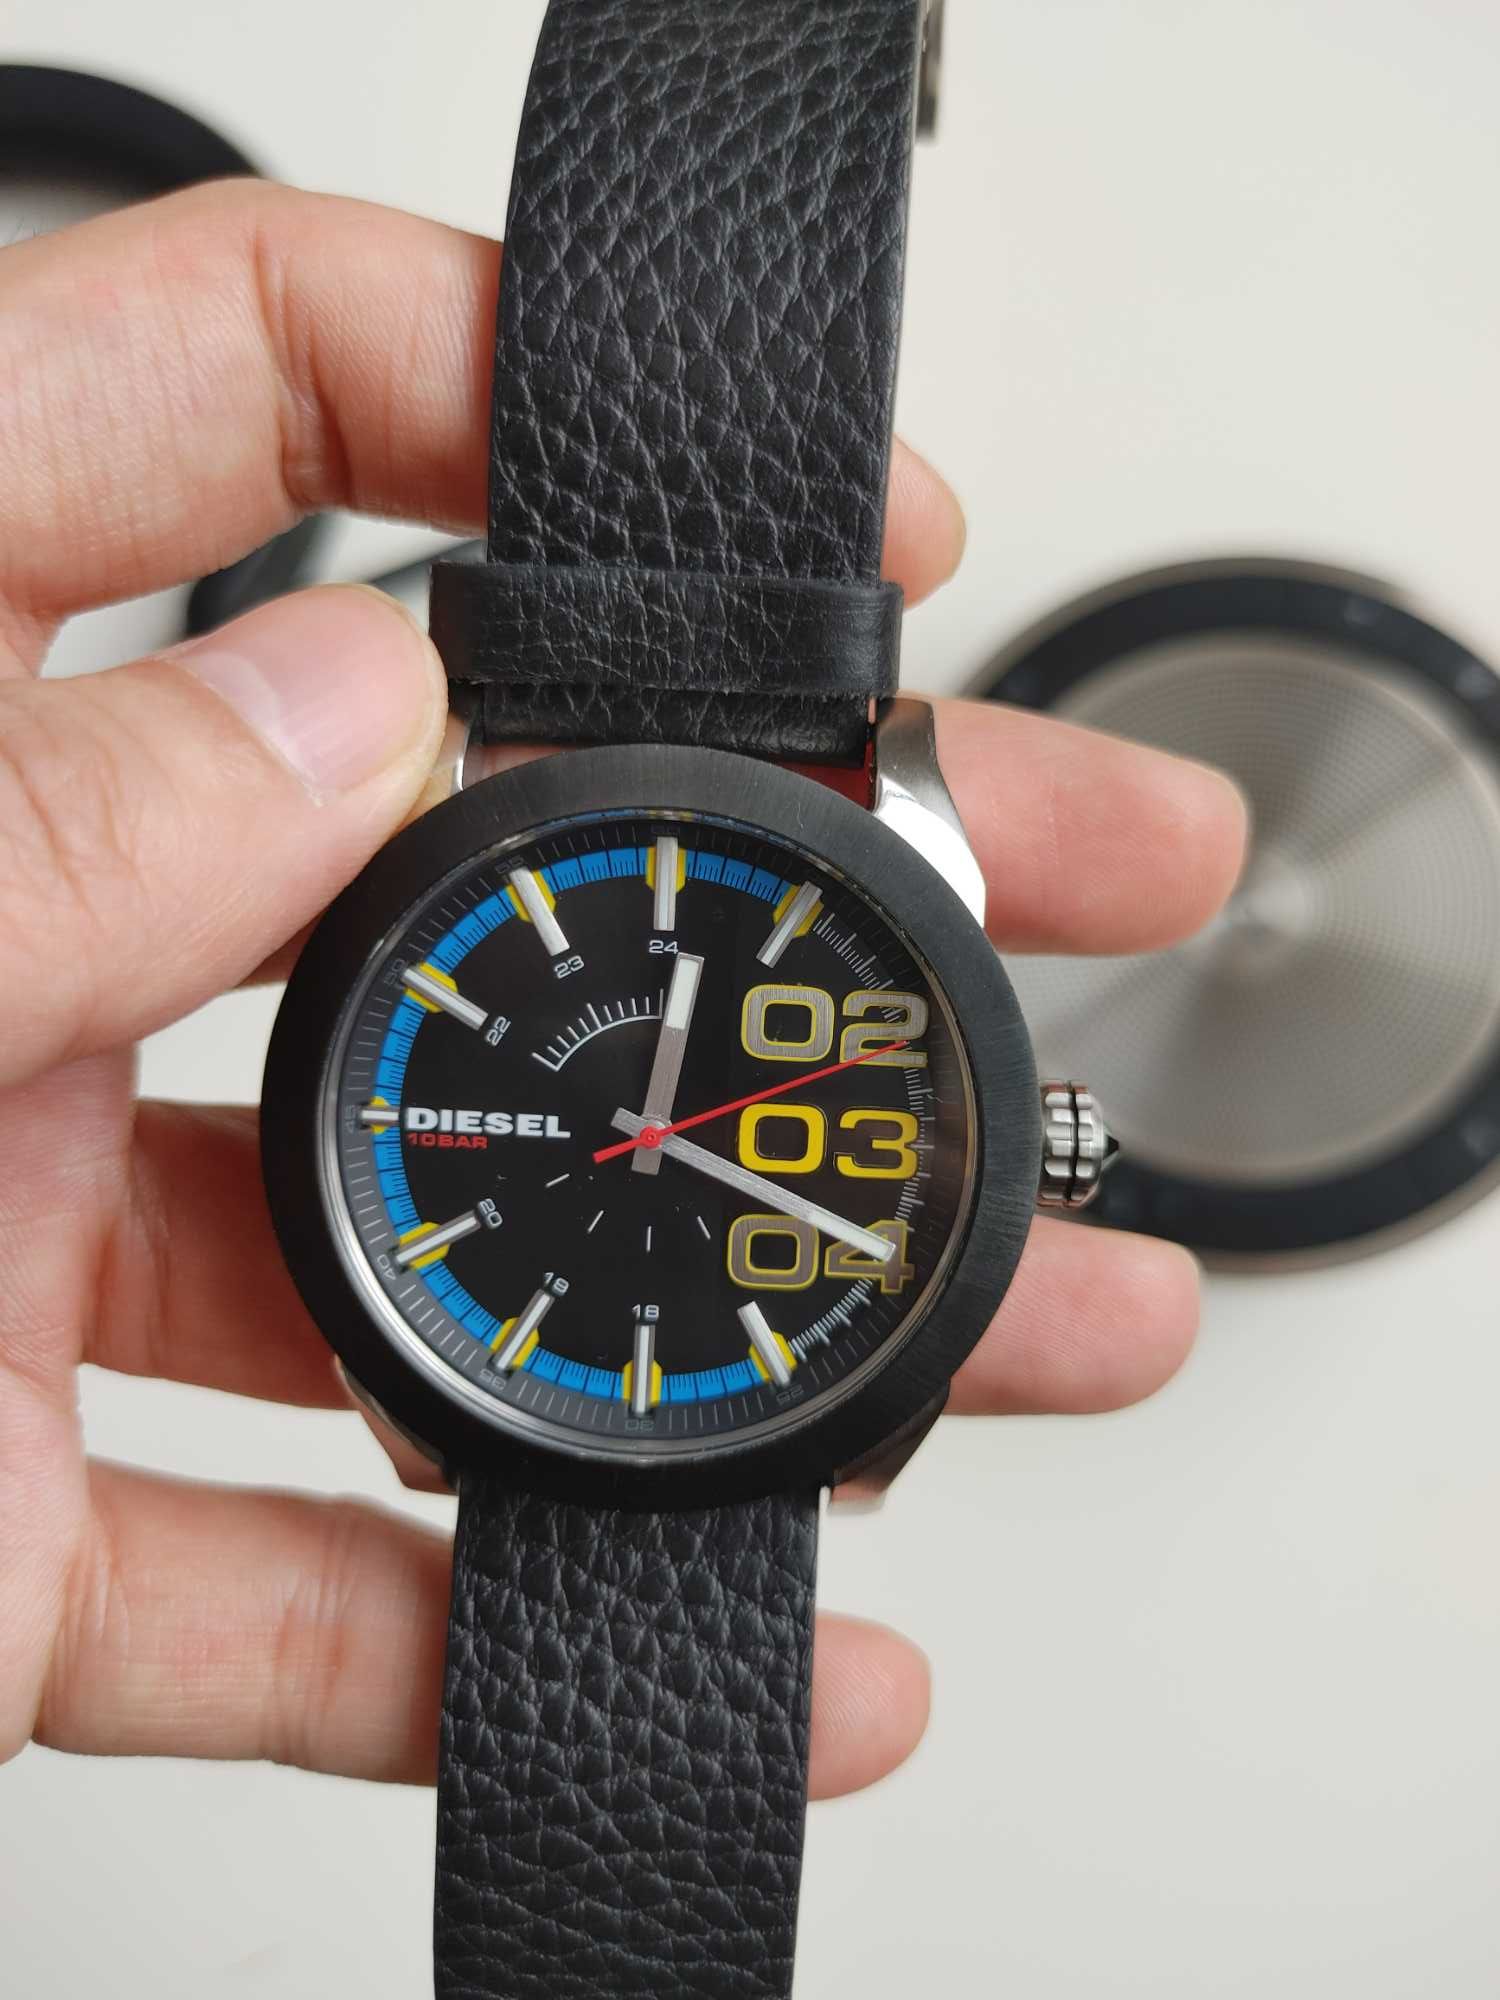 Эксклюзивная симпатичная и яркая модель часы Diesel DZ1677 из США